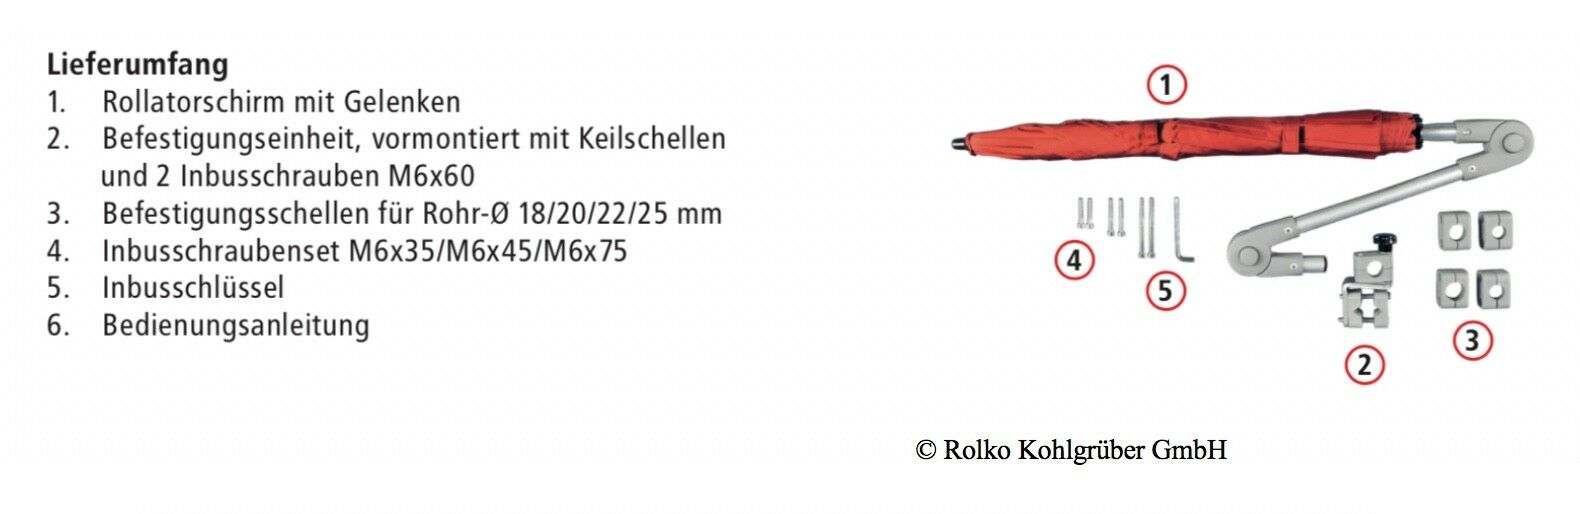 Rollatorschirm für Schutz vor Sonne und Regen in Rot (Rolko GmbH)